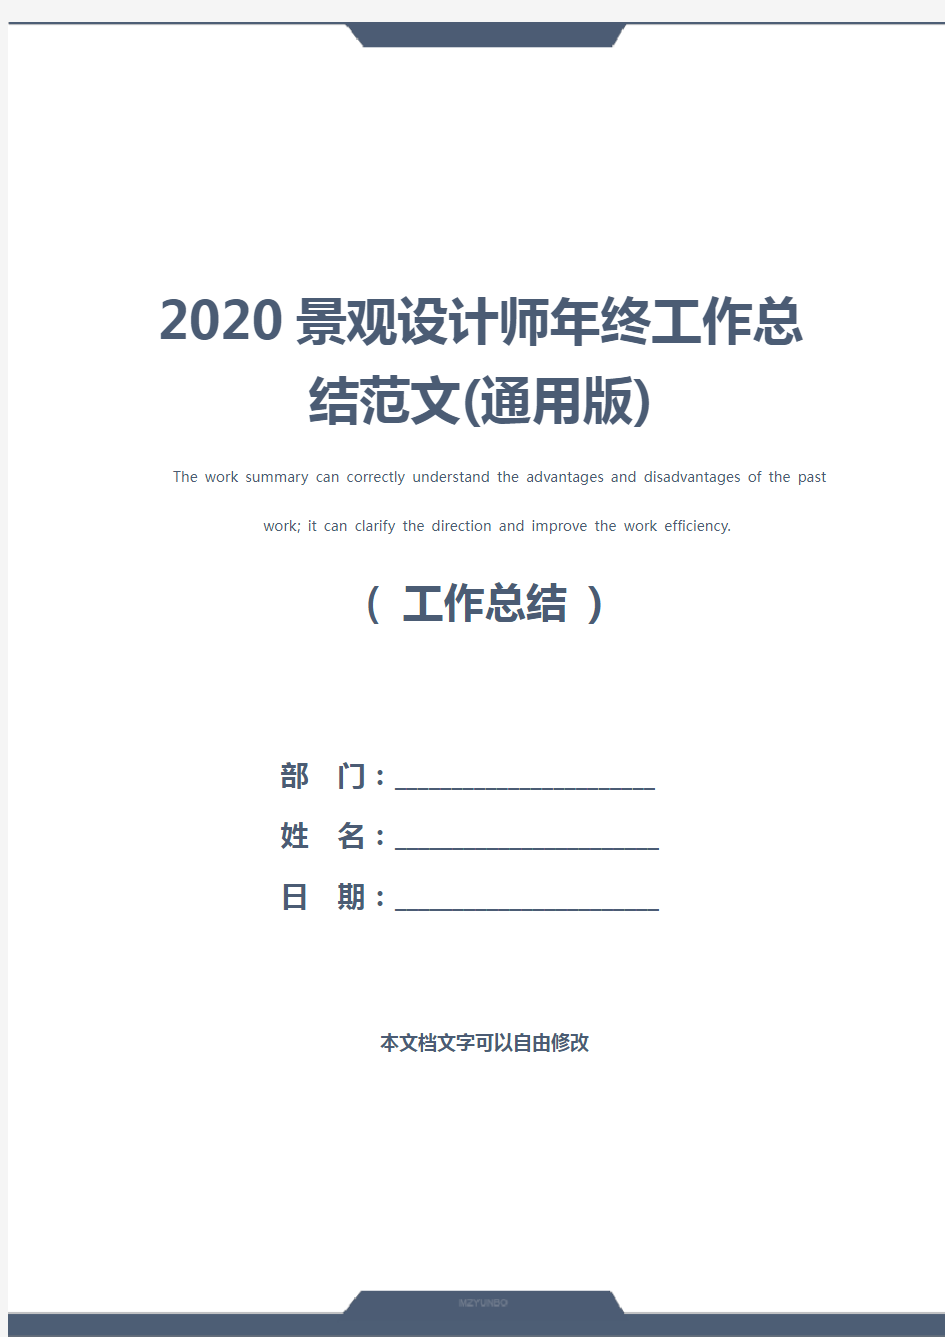 2020景观设计师年终工作总结范文(通用版)